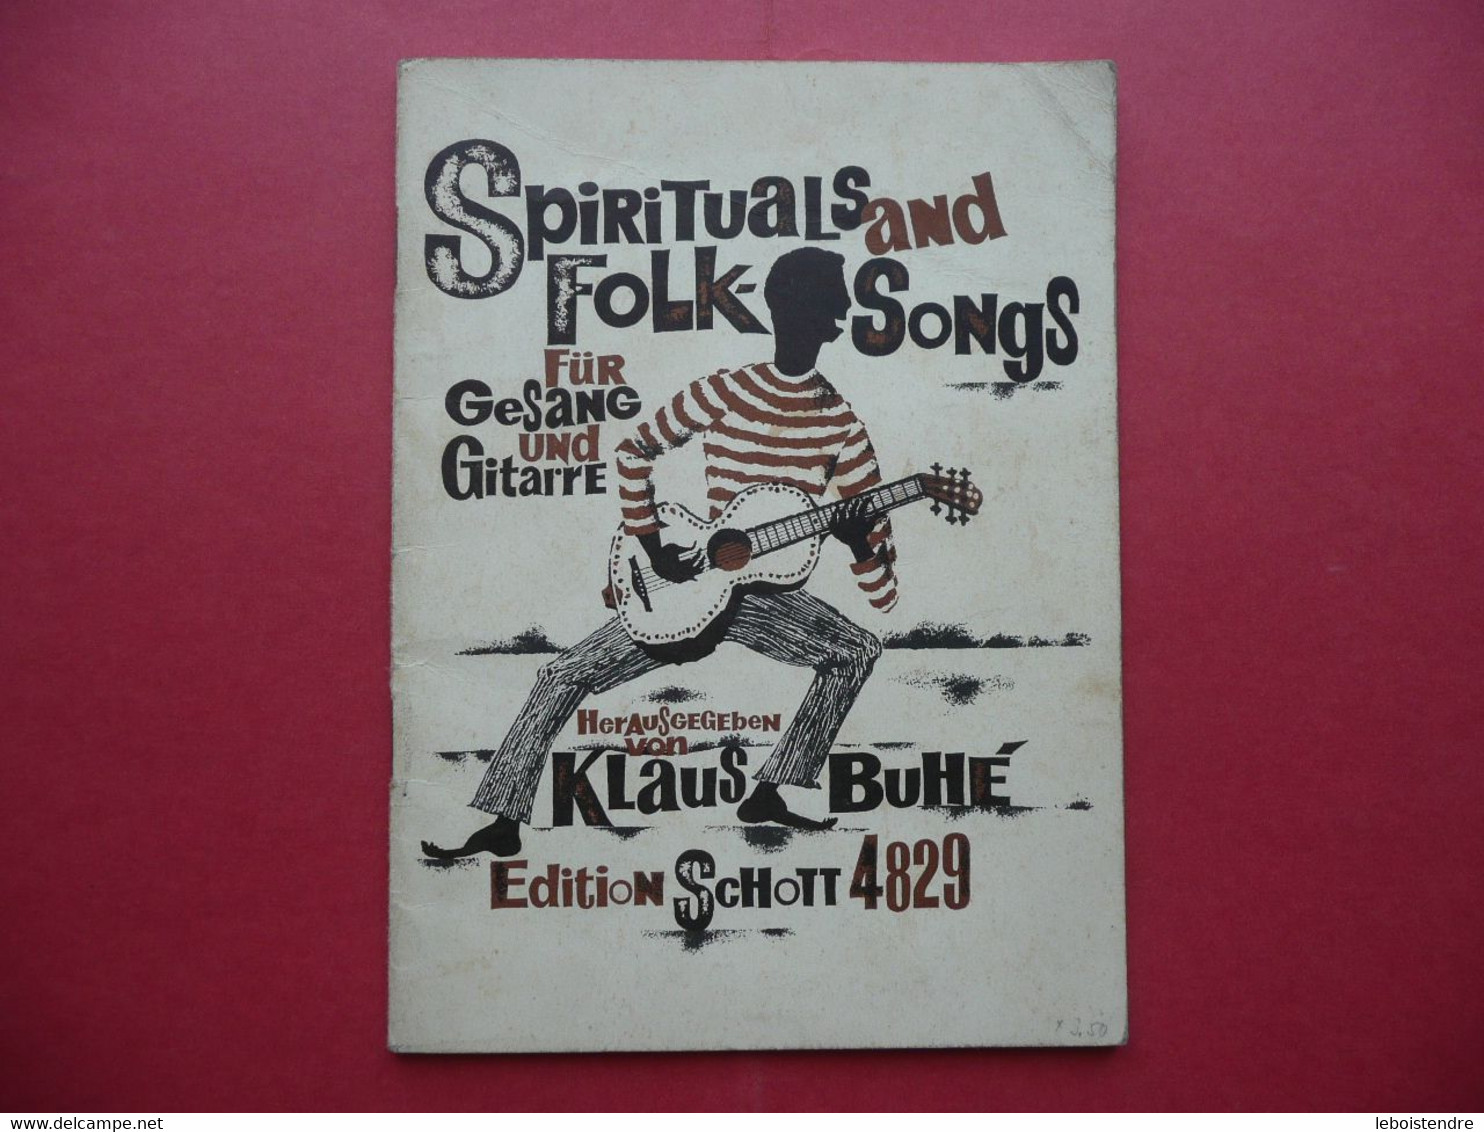 SPIRITUALS AND FOLK SONGS FUR GESANG UND GUITARRE HERAUSGEGEBEN VON KLAUS BUHE EDITION SCHOTT 4829 PARTITIONS - Muziek